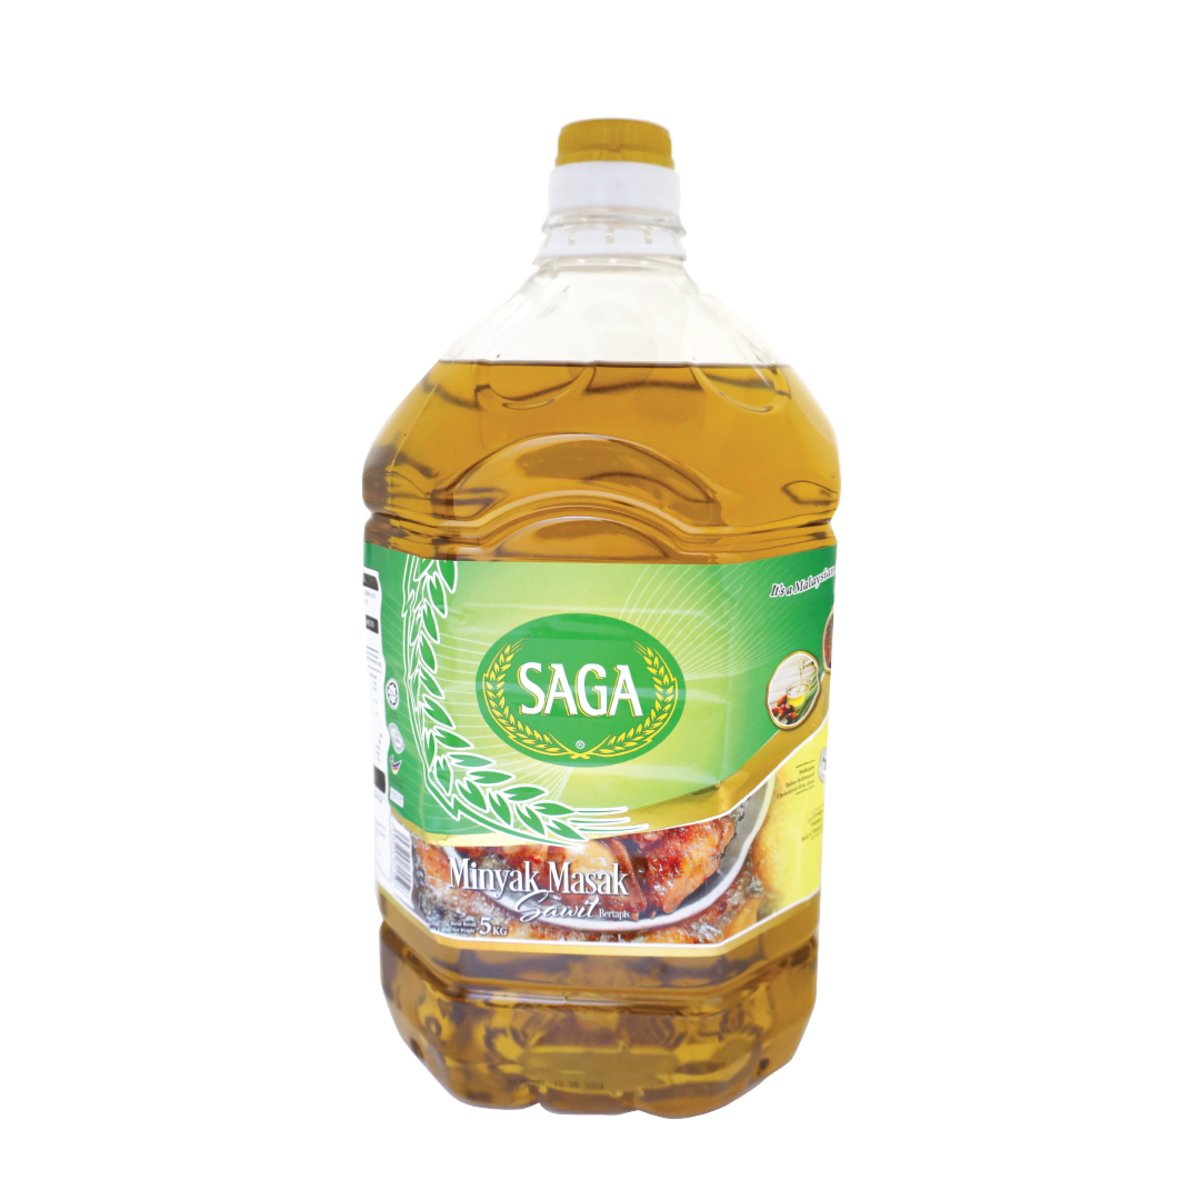 Saga Edible Palm Cooking Oil 5kg